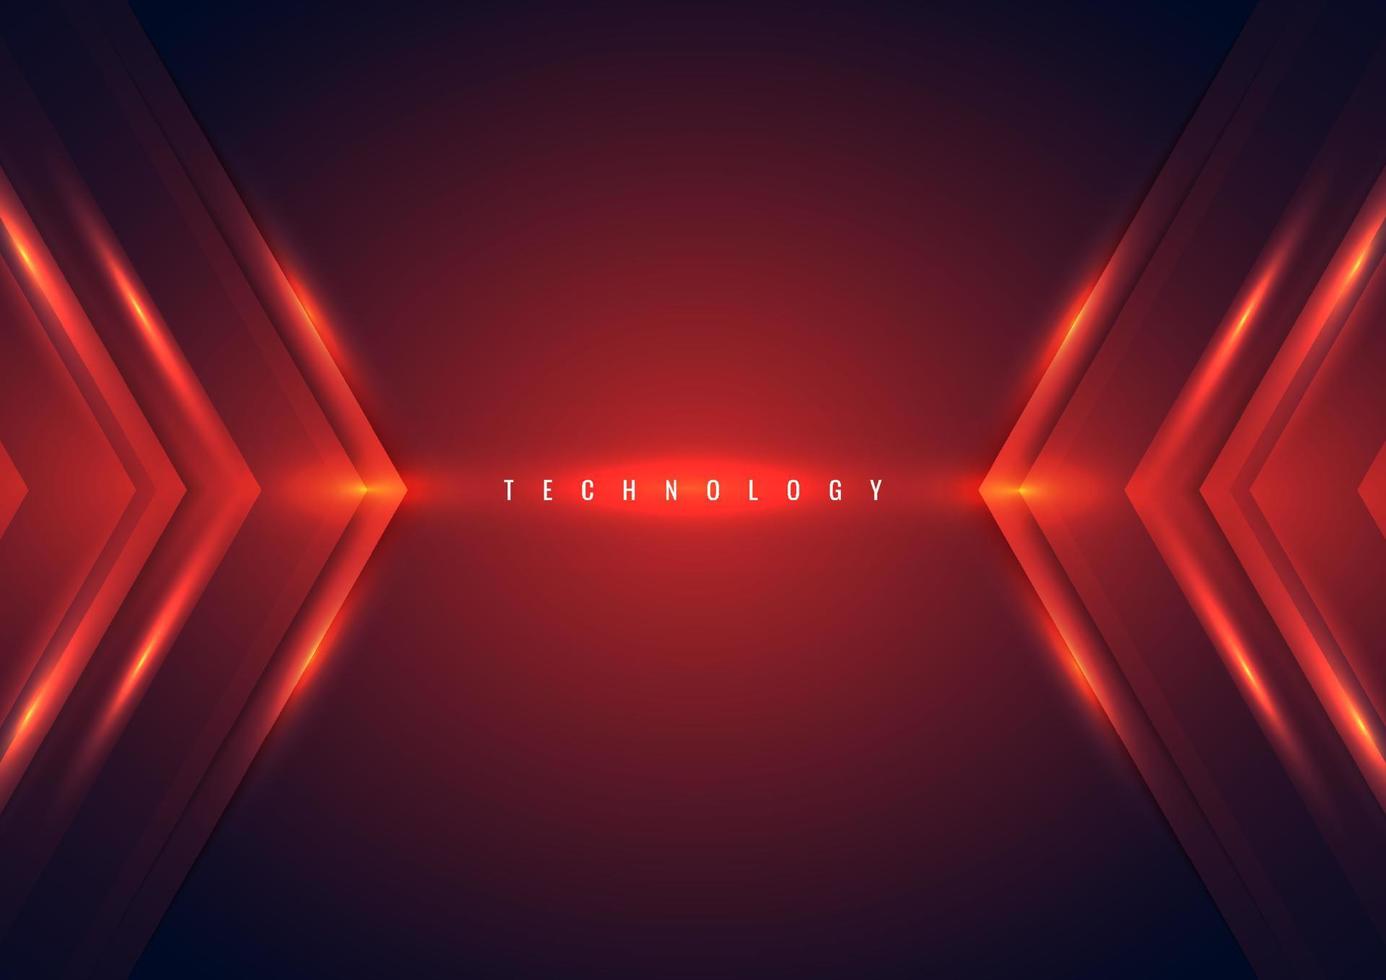 abstracte technologie concept rode pijl verlichting effect driehoek op donkere achtergrond vector